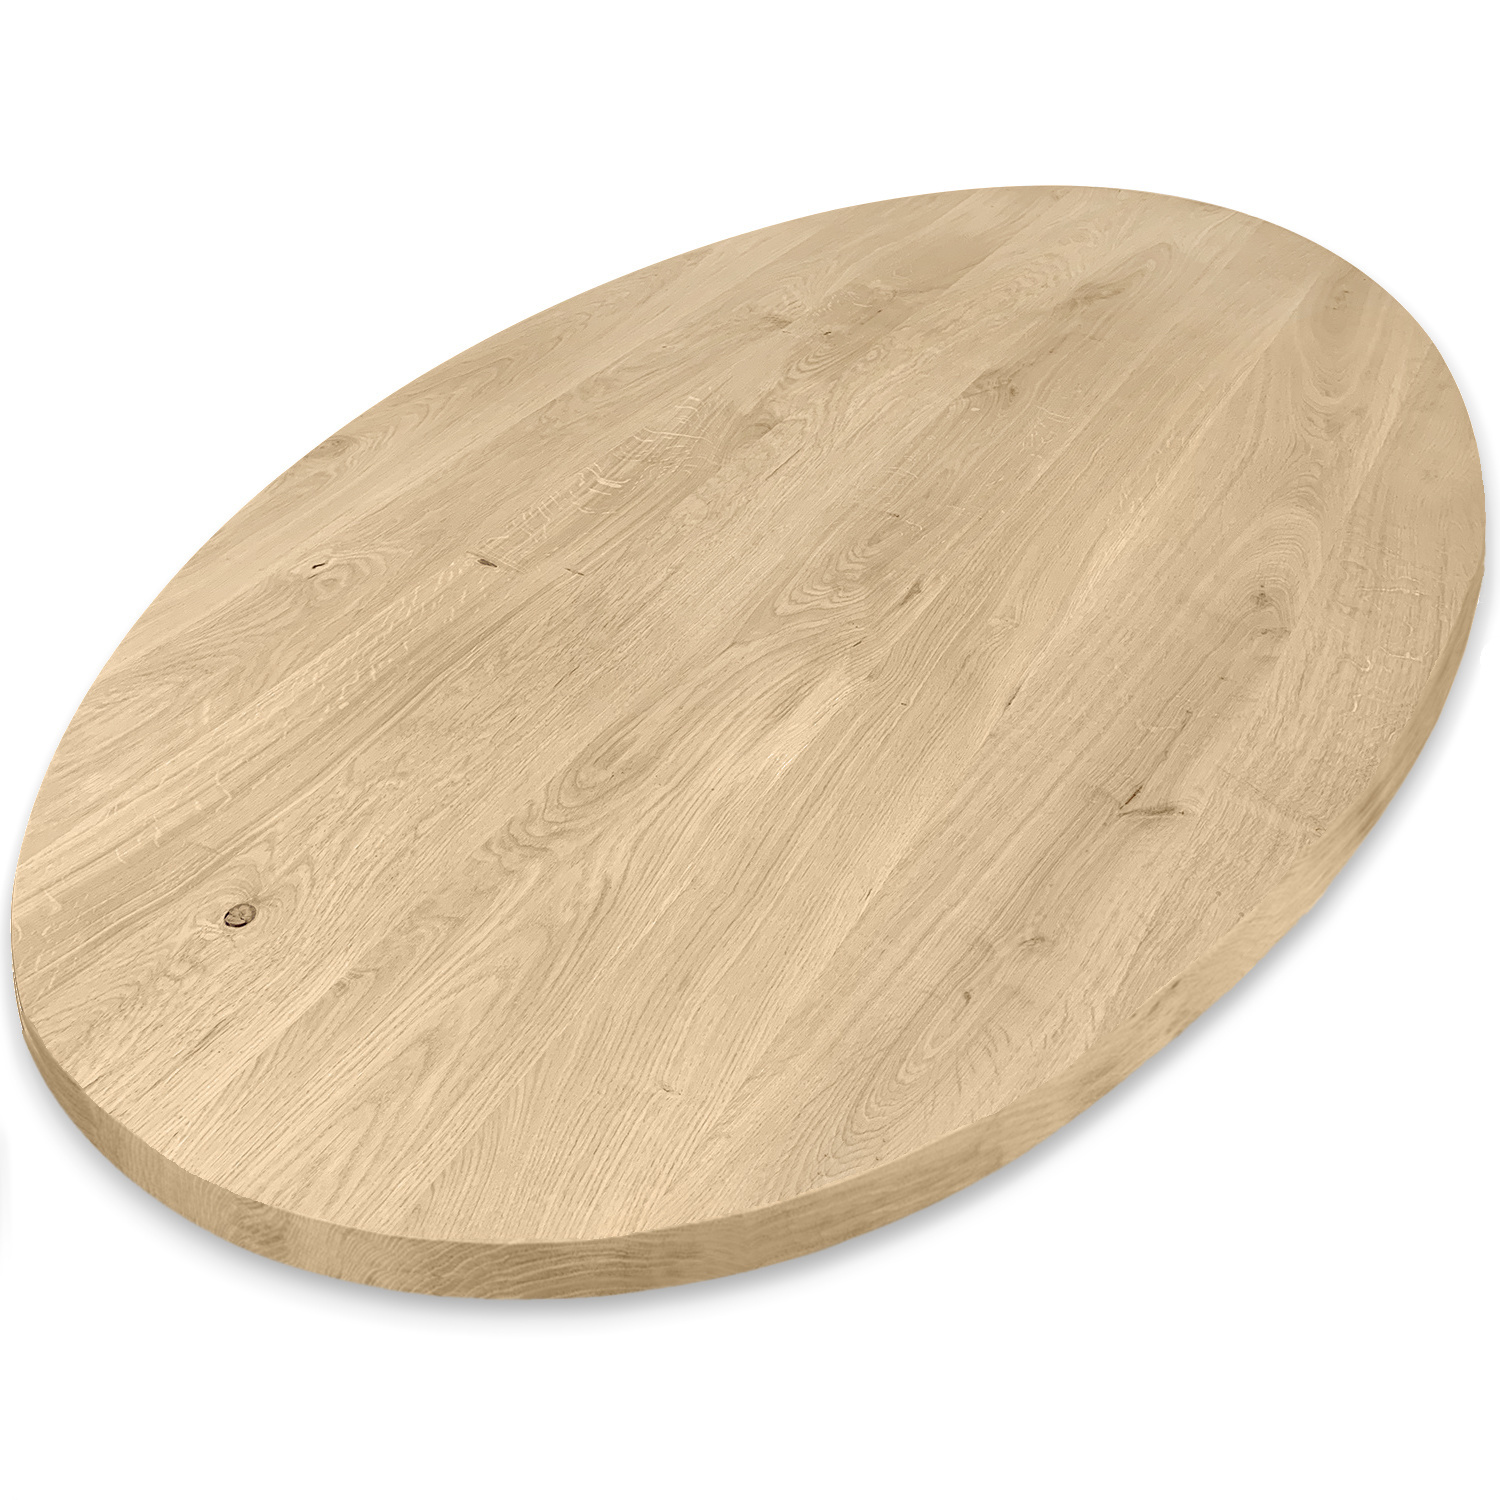  Ovaal eiken tafelblad - 4 cm dik (1-laag) - Diverse afmetingen - rustiek Europees eikenhout - met brede lamellen (circa 10-12 cm) - verlijmd kd 8-12%